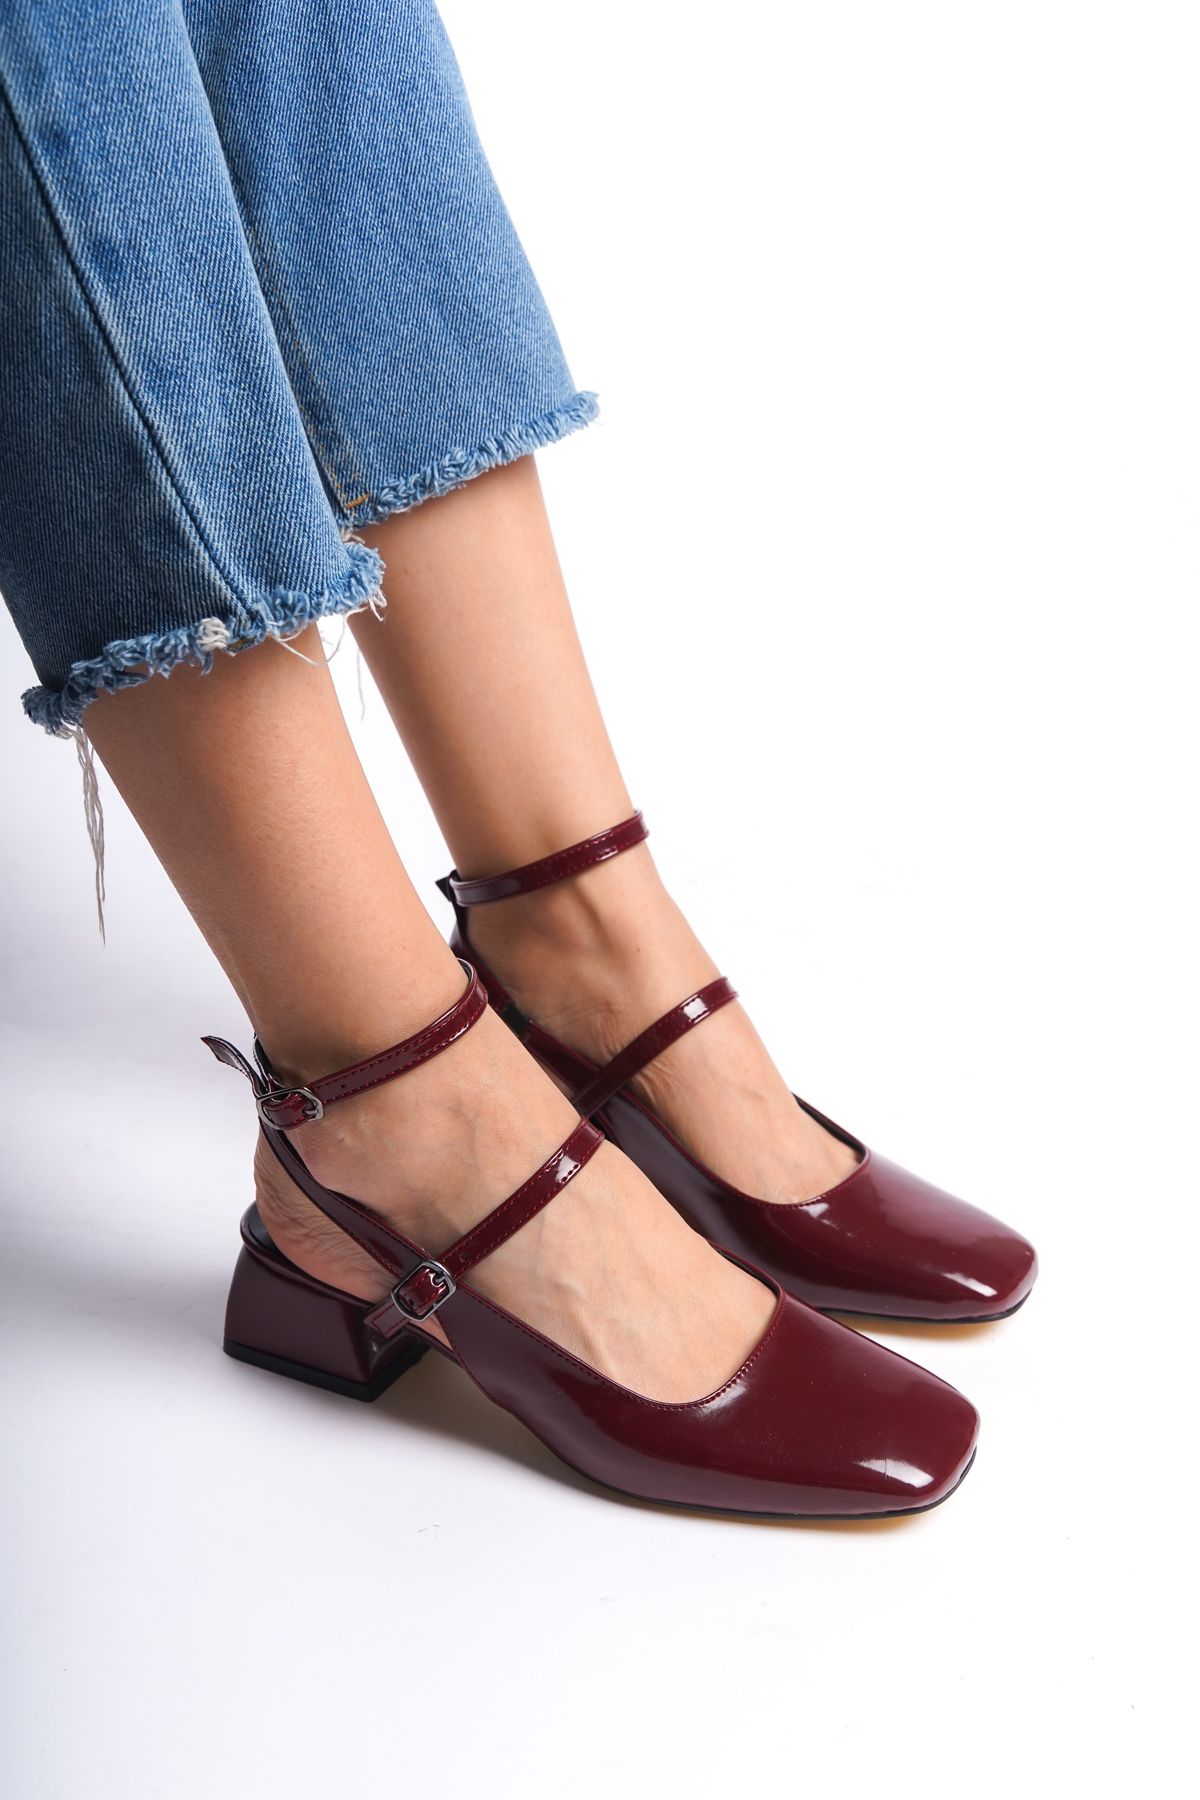 Moda Değirmeni Bordo Rugan Kadın Çift Toka Bilekten Bağlamalı Kısa Topuklu Ayakkabı BG1184-119-0001